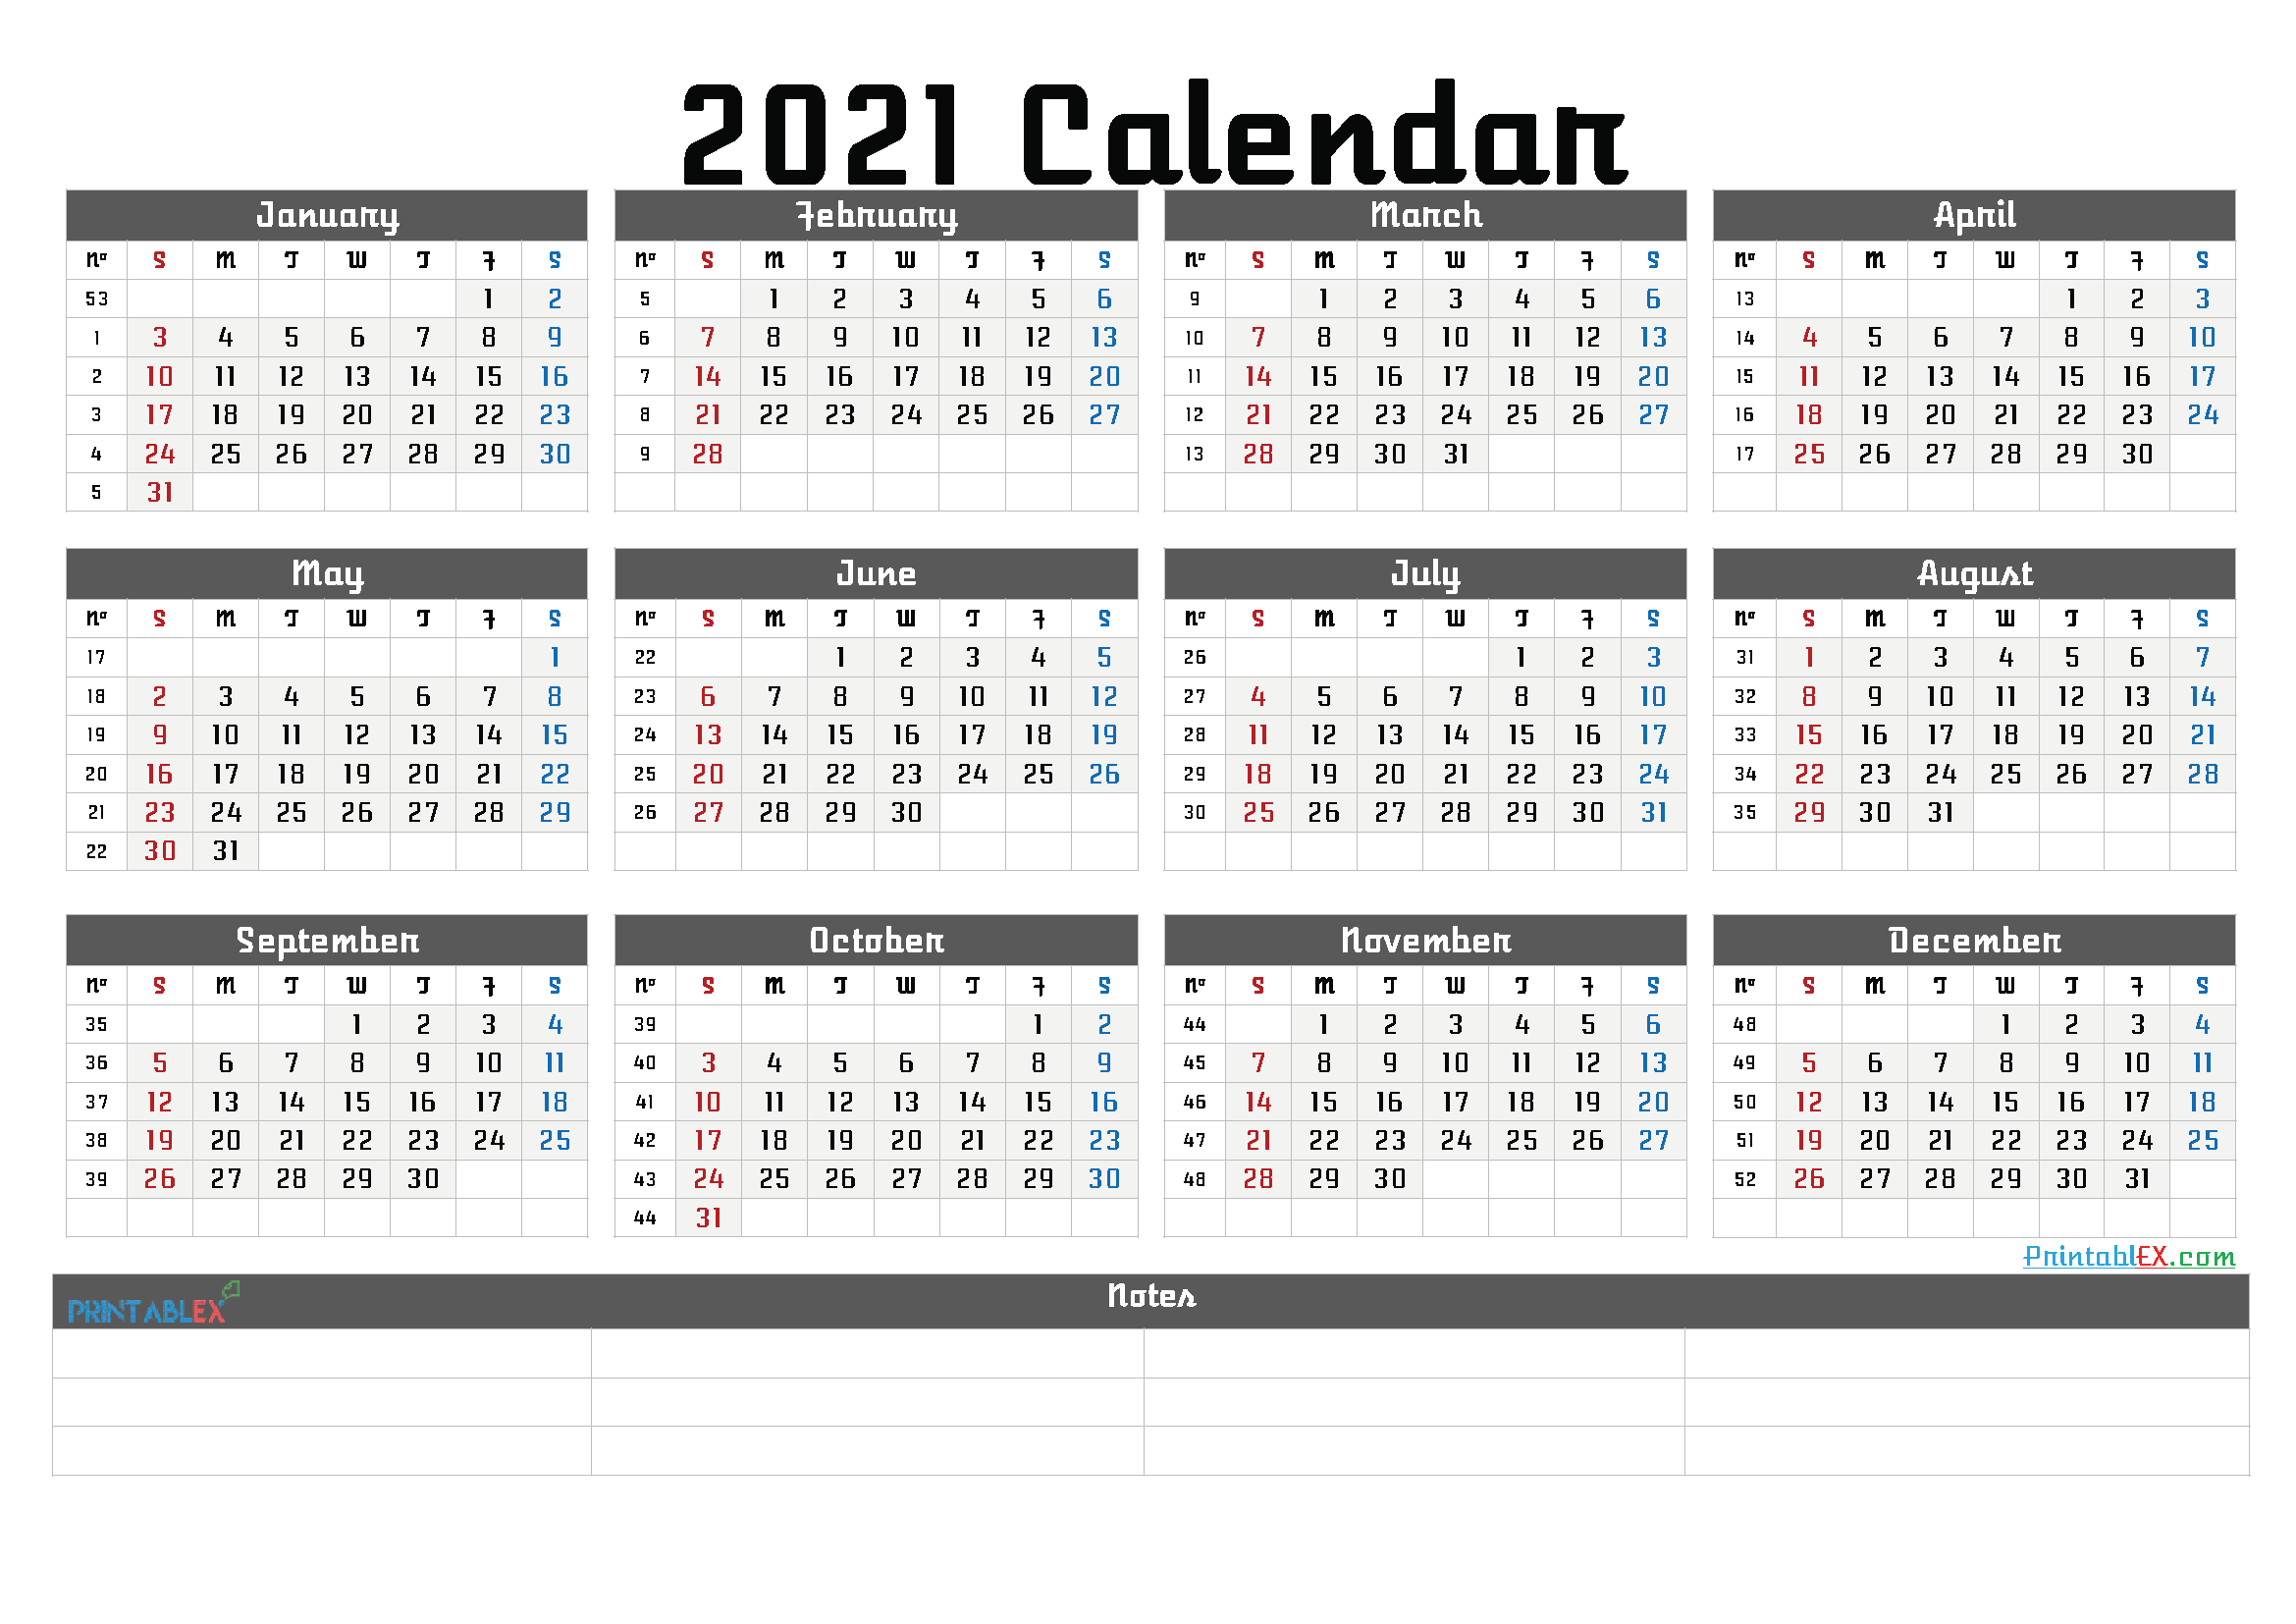 Printable Calendar Templates 2021